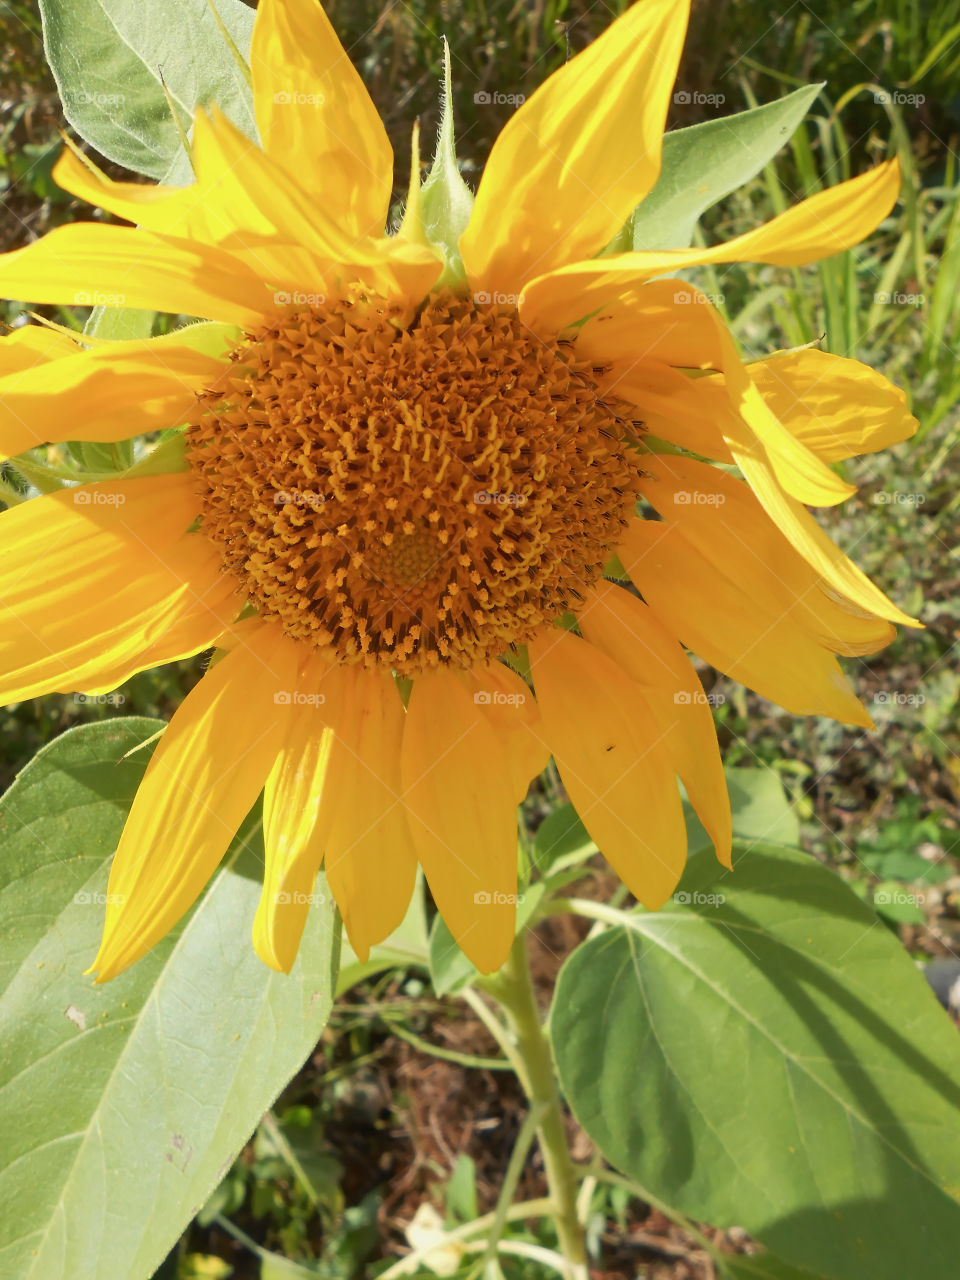 Sunflower Downturn